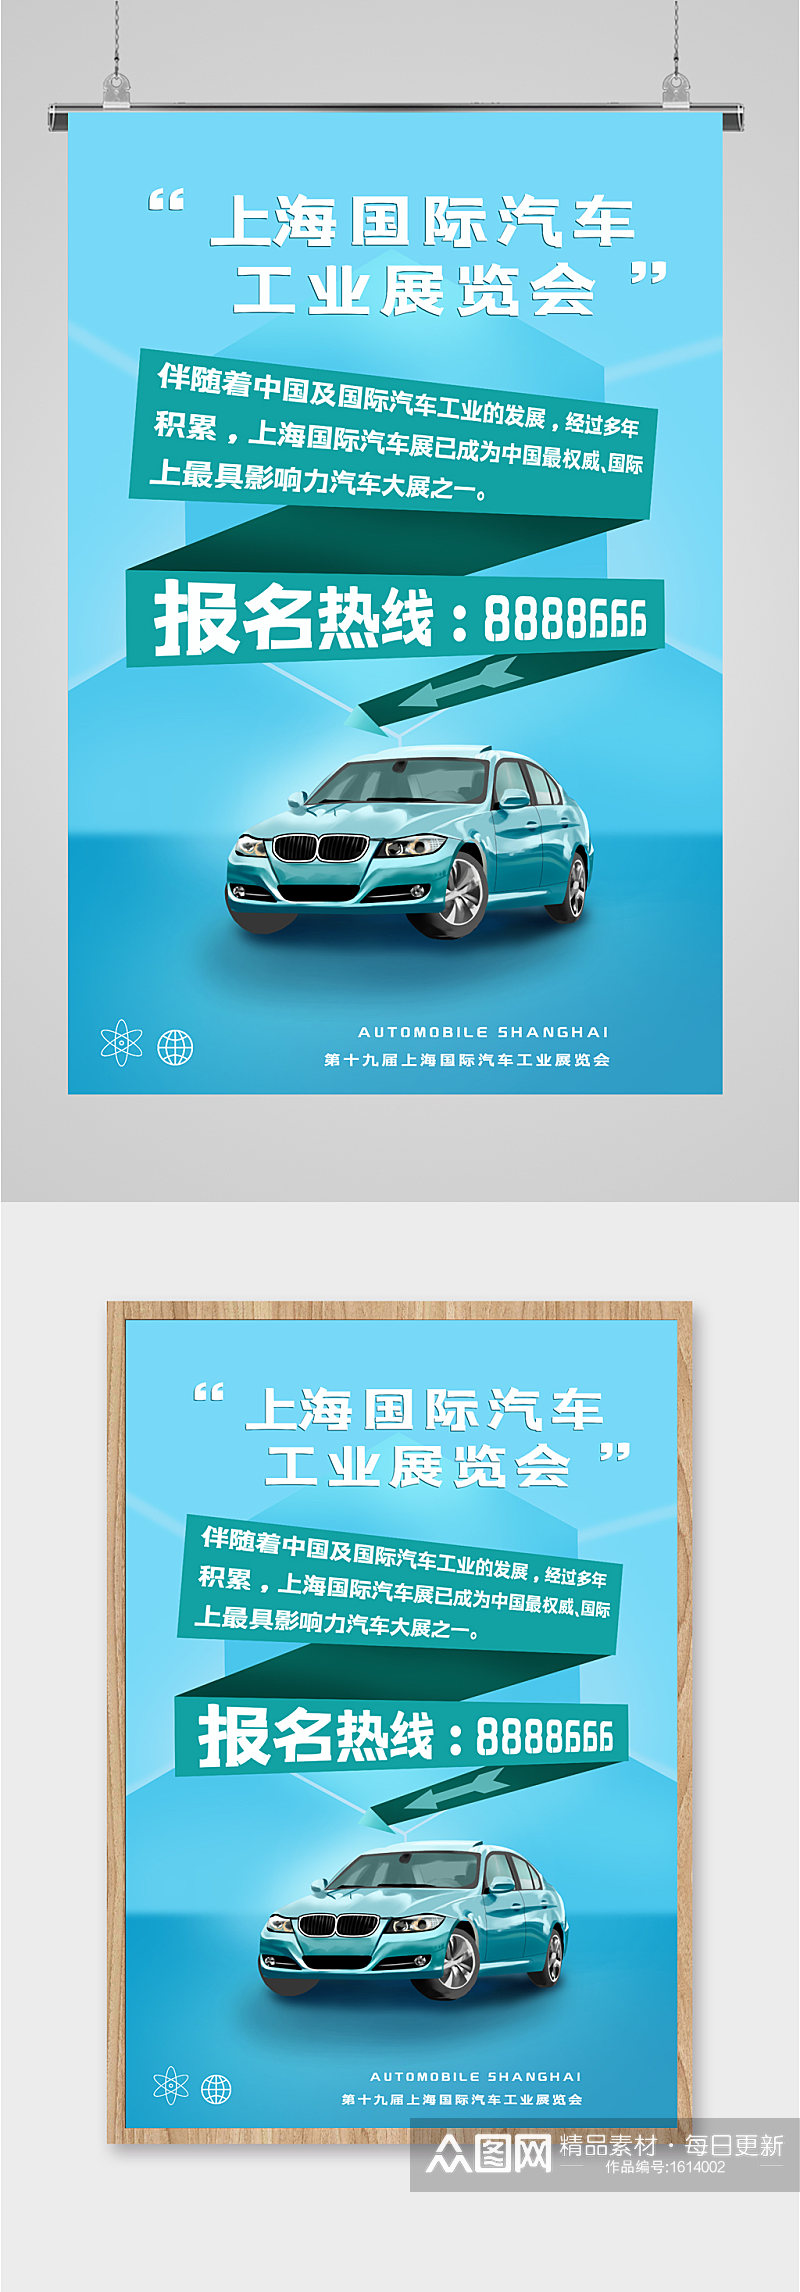 上海国际汽车展览会蓝色海报素材